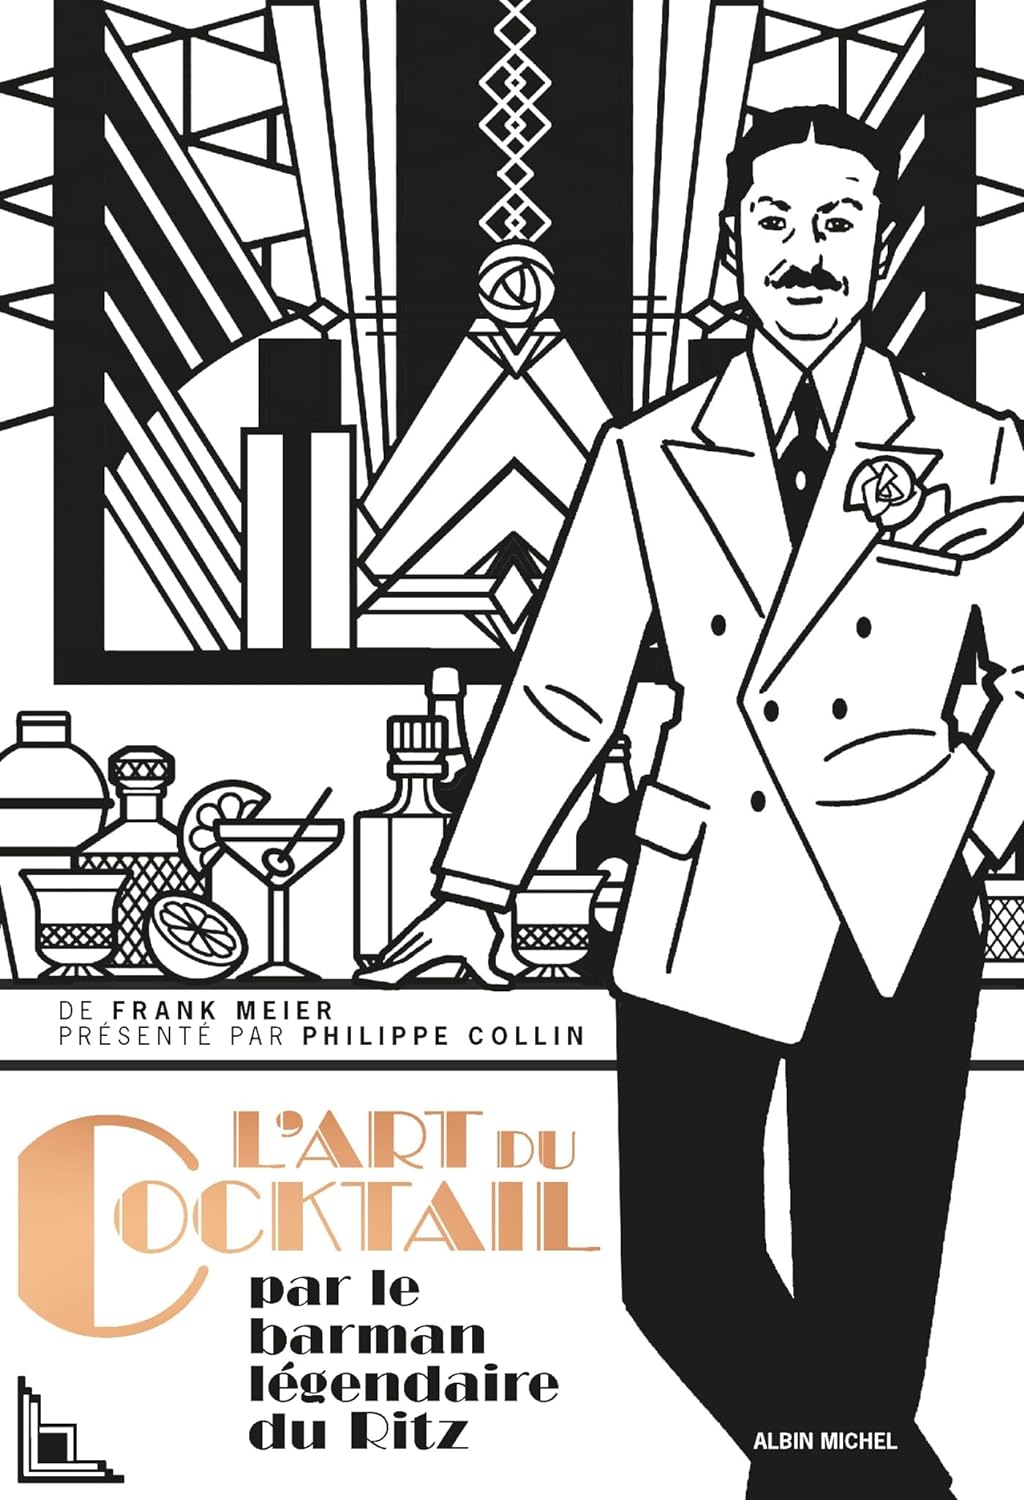 L'art du cocktail    - Albin Michel Ed. - Livre d'alcool et boisson - 